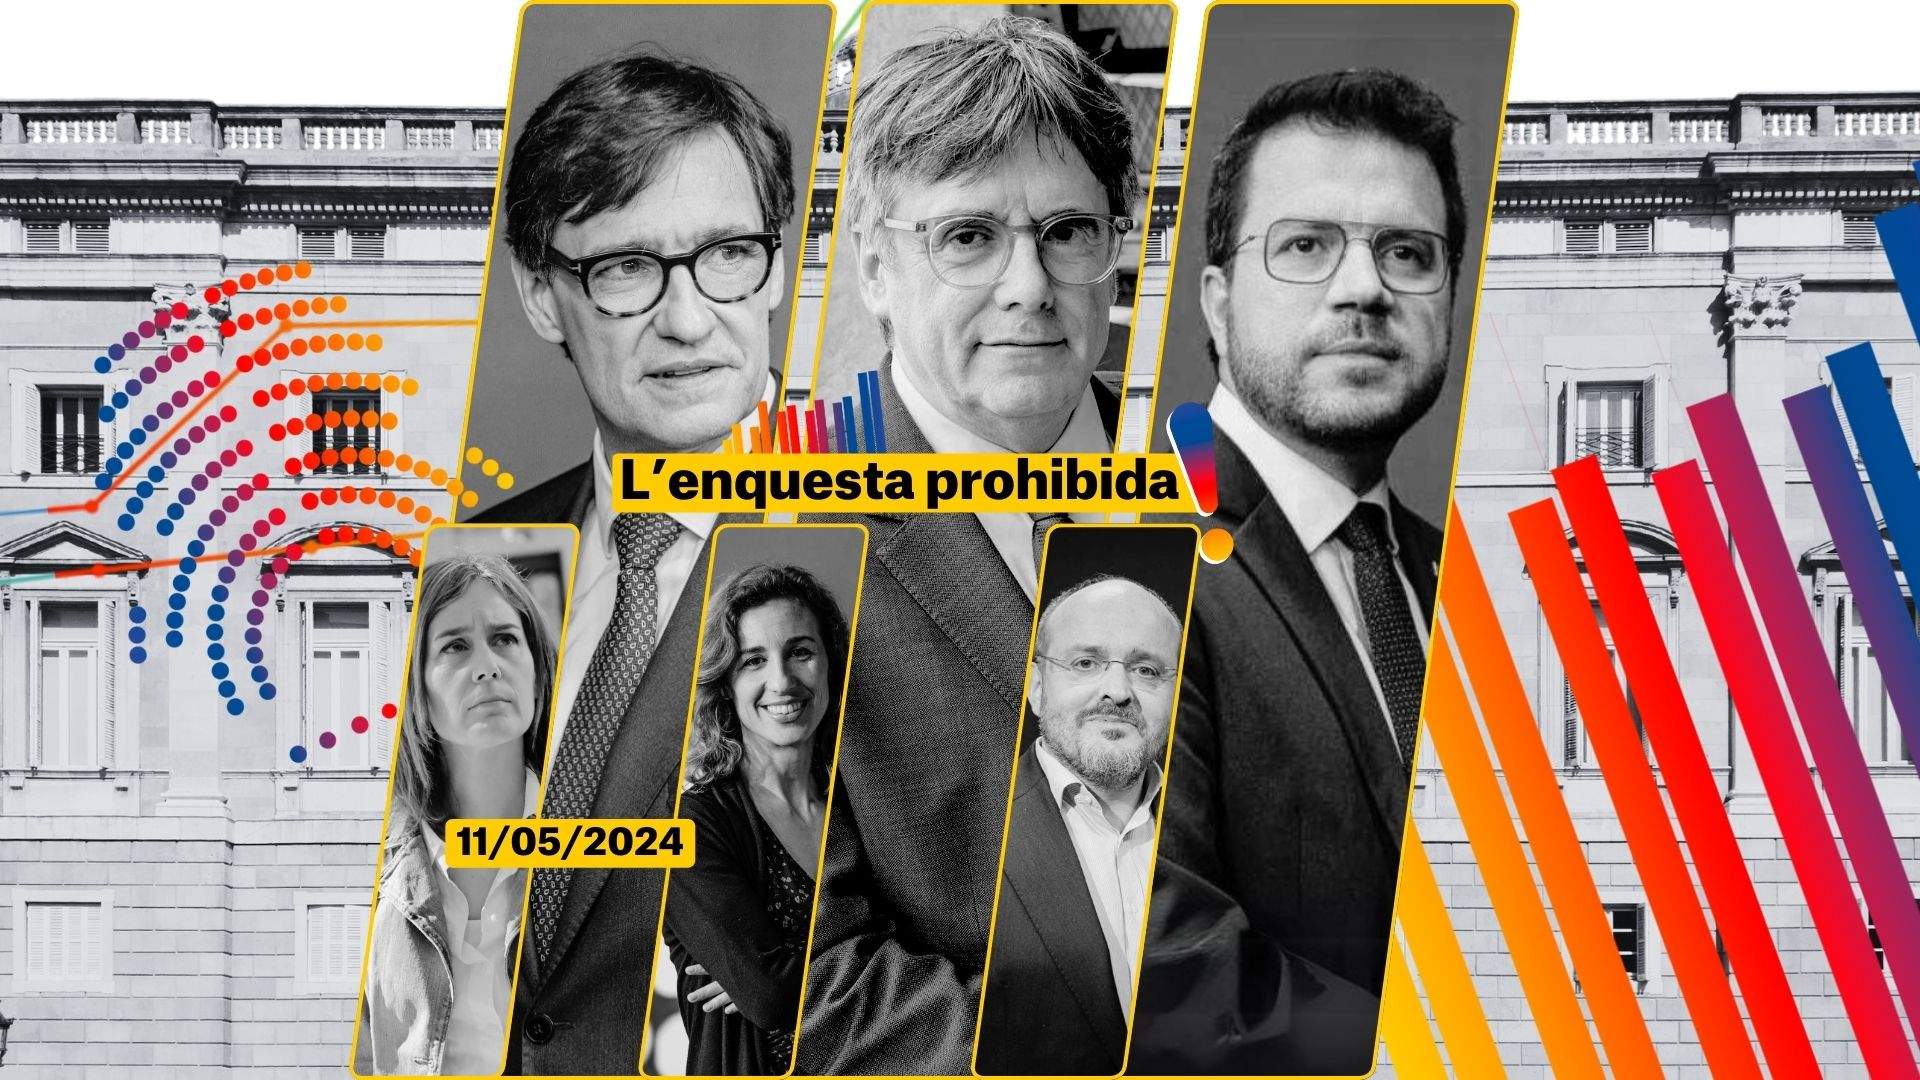 Enquesta eleccions Catalunya 2024   Enquesta prohibida 11 maig